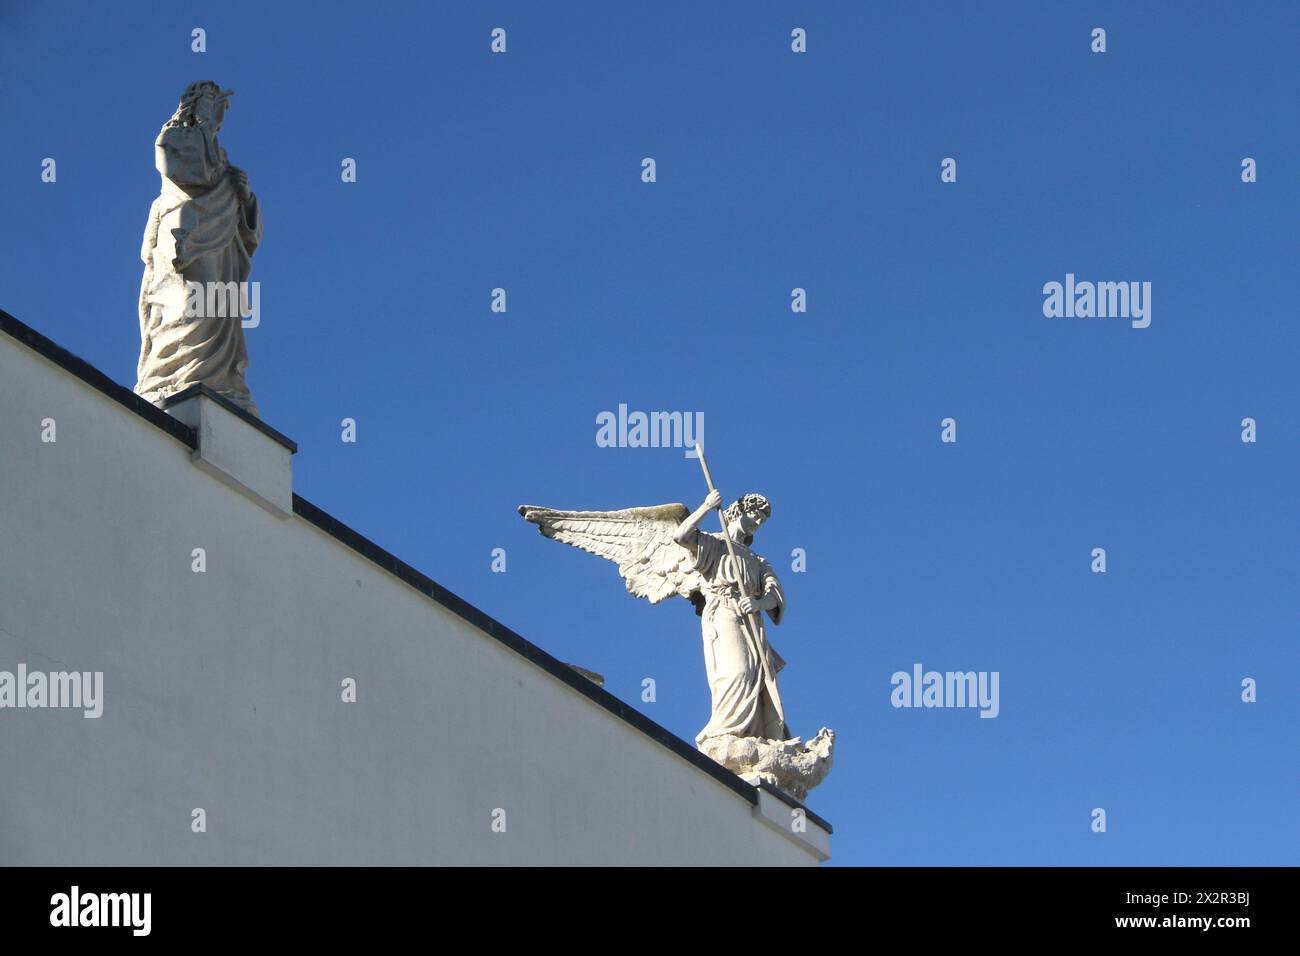 Mola di Bari, Italie. Statues de saints catholiques au sommet d'un bâtiment résidentiel. Banque D'Images